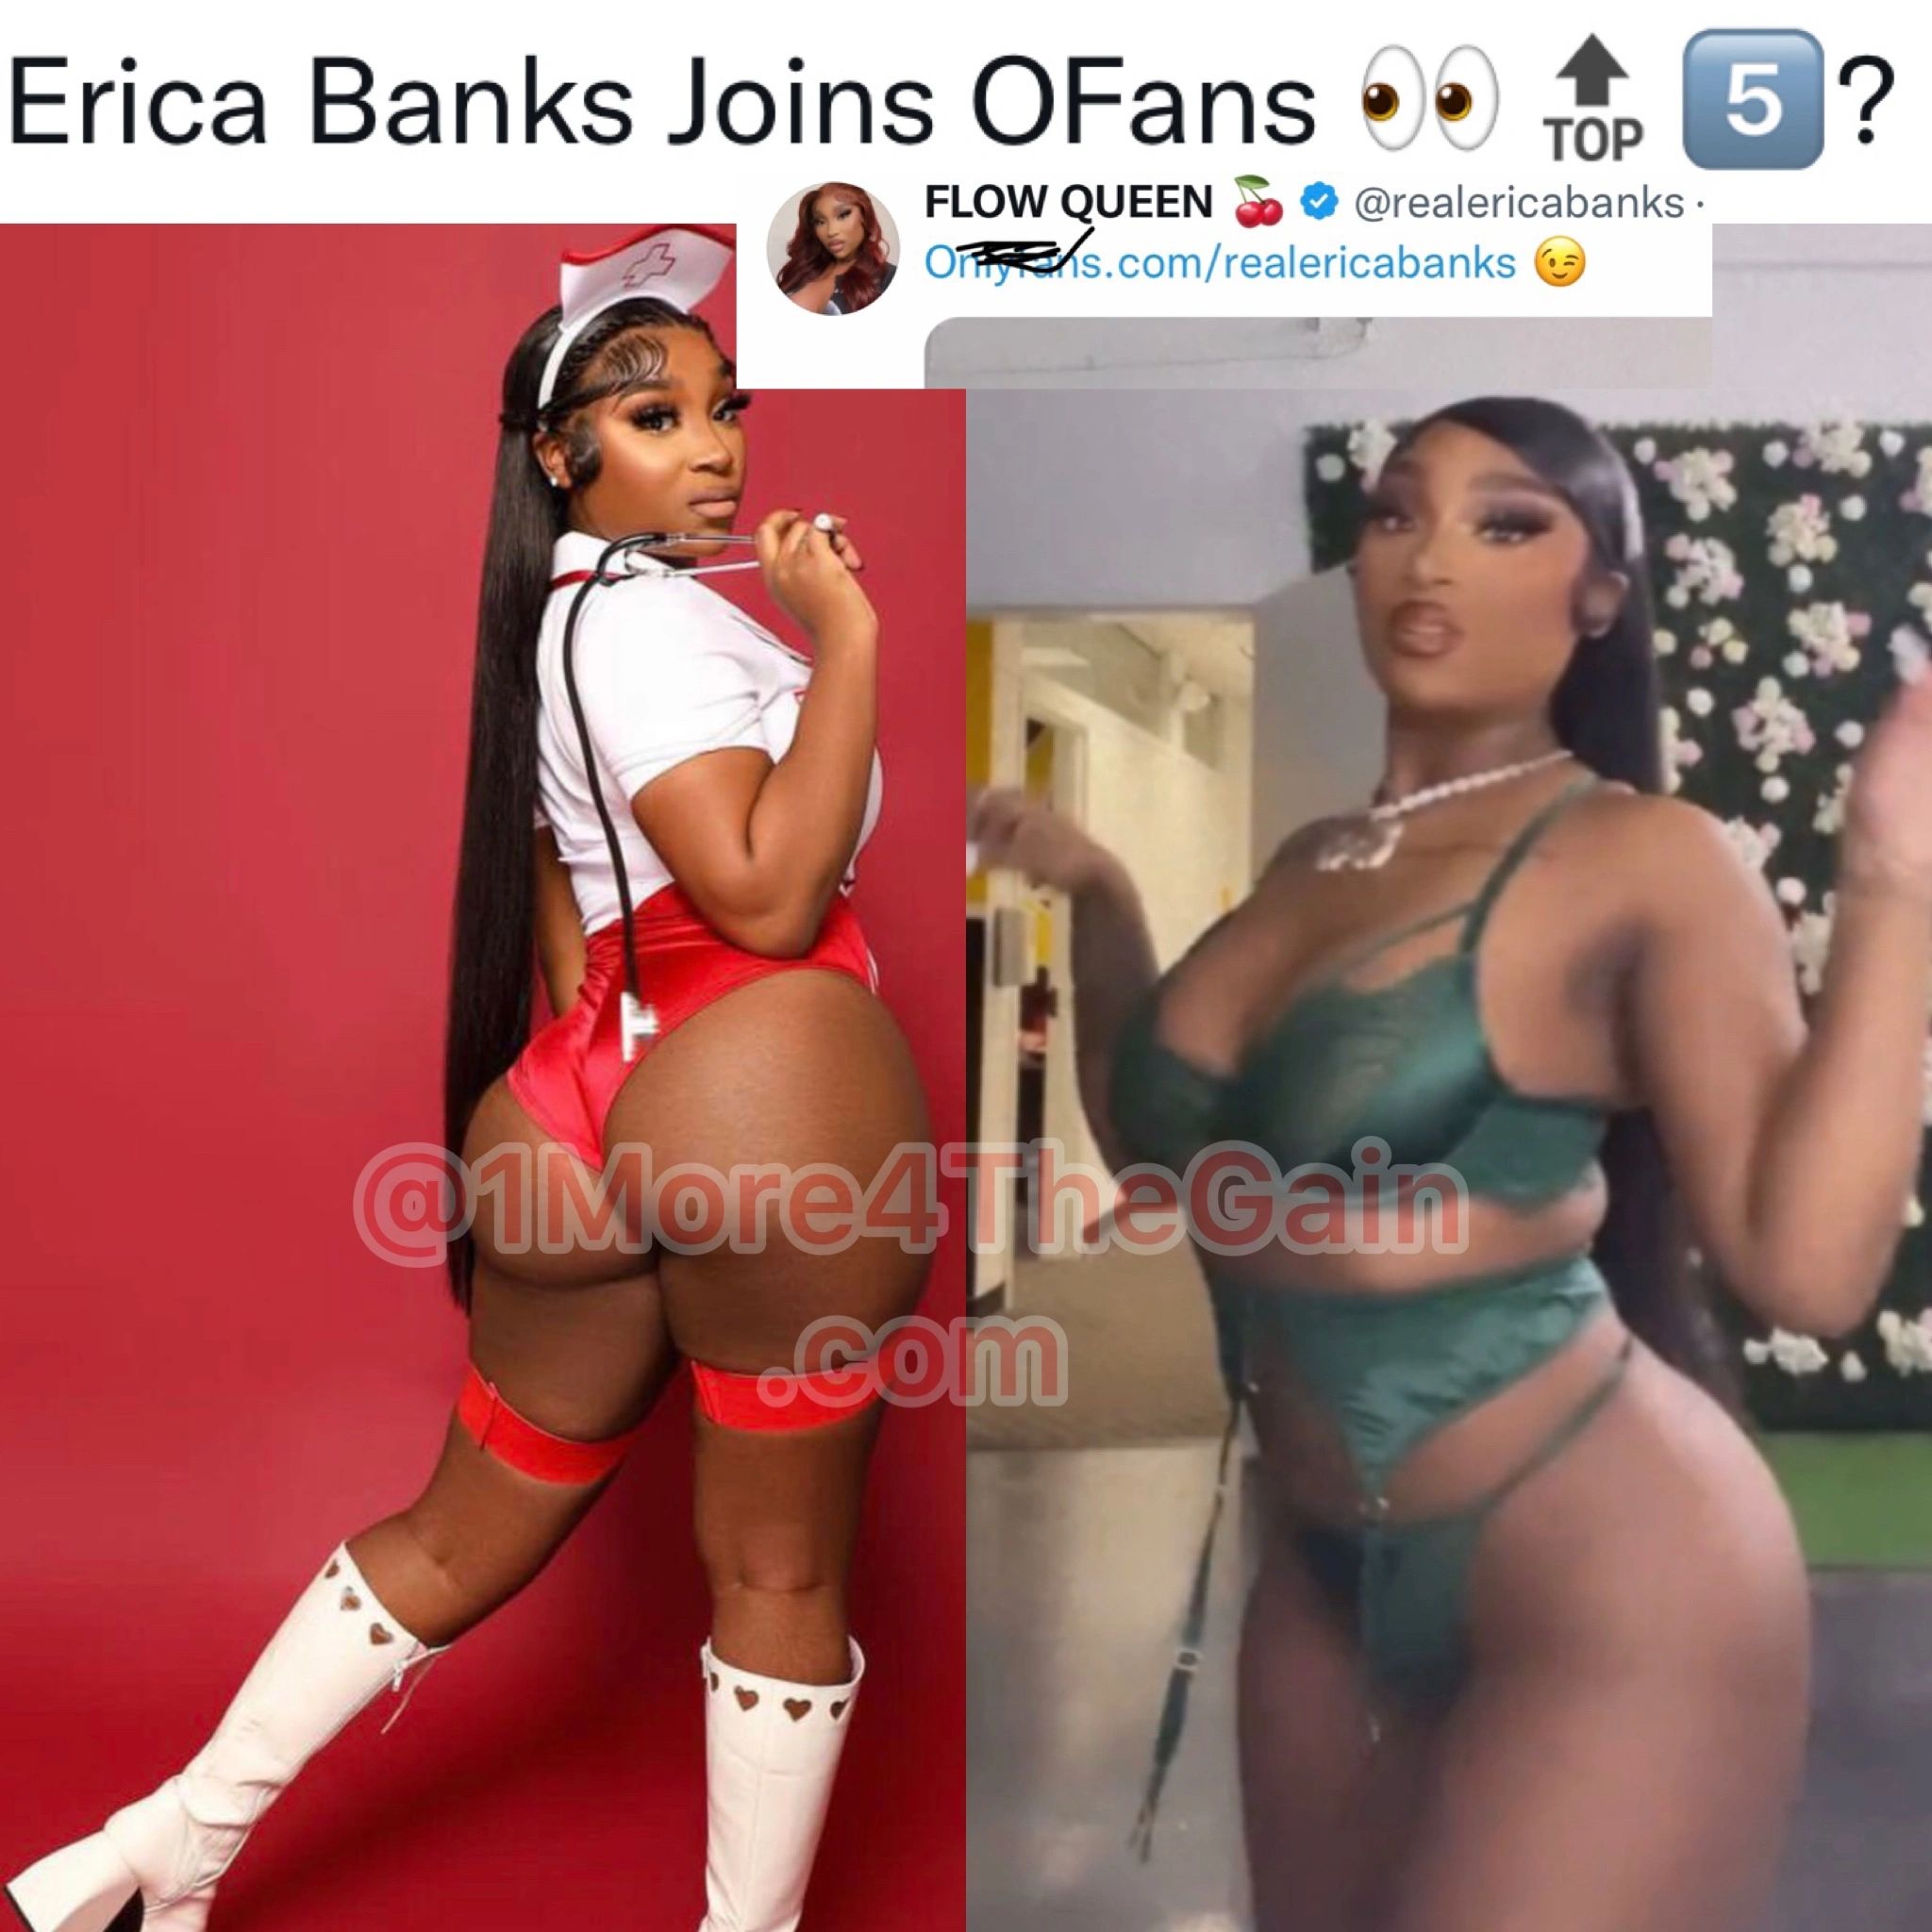 Erica banks onlyfans leak